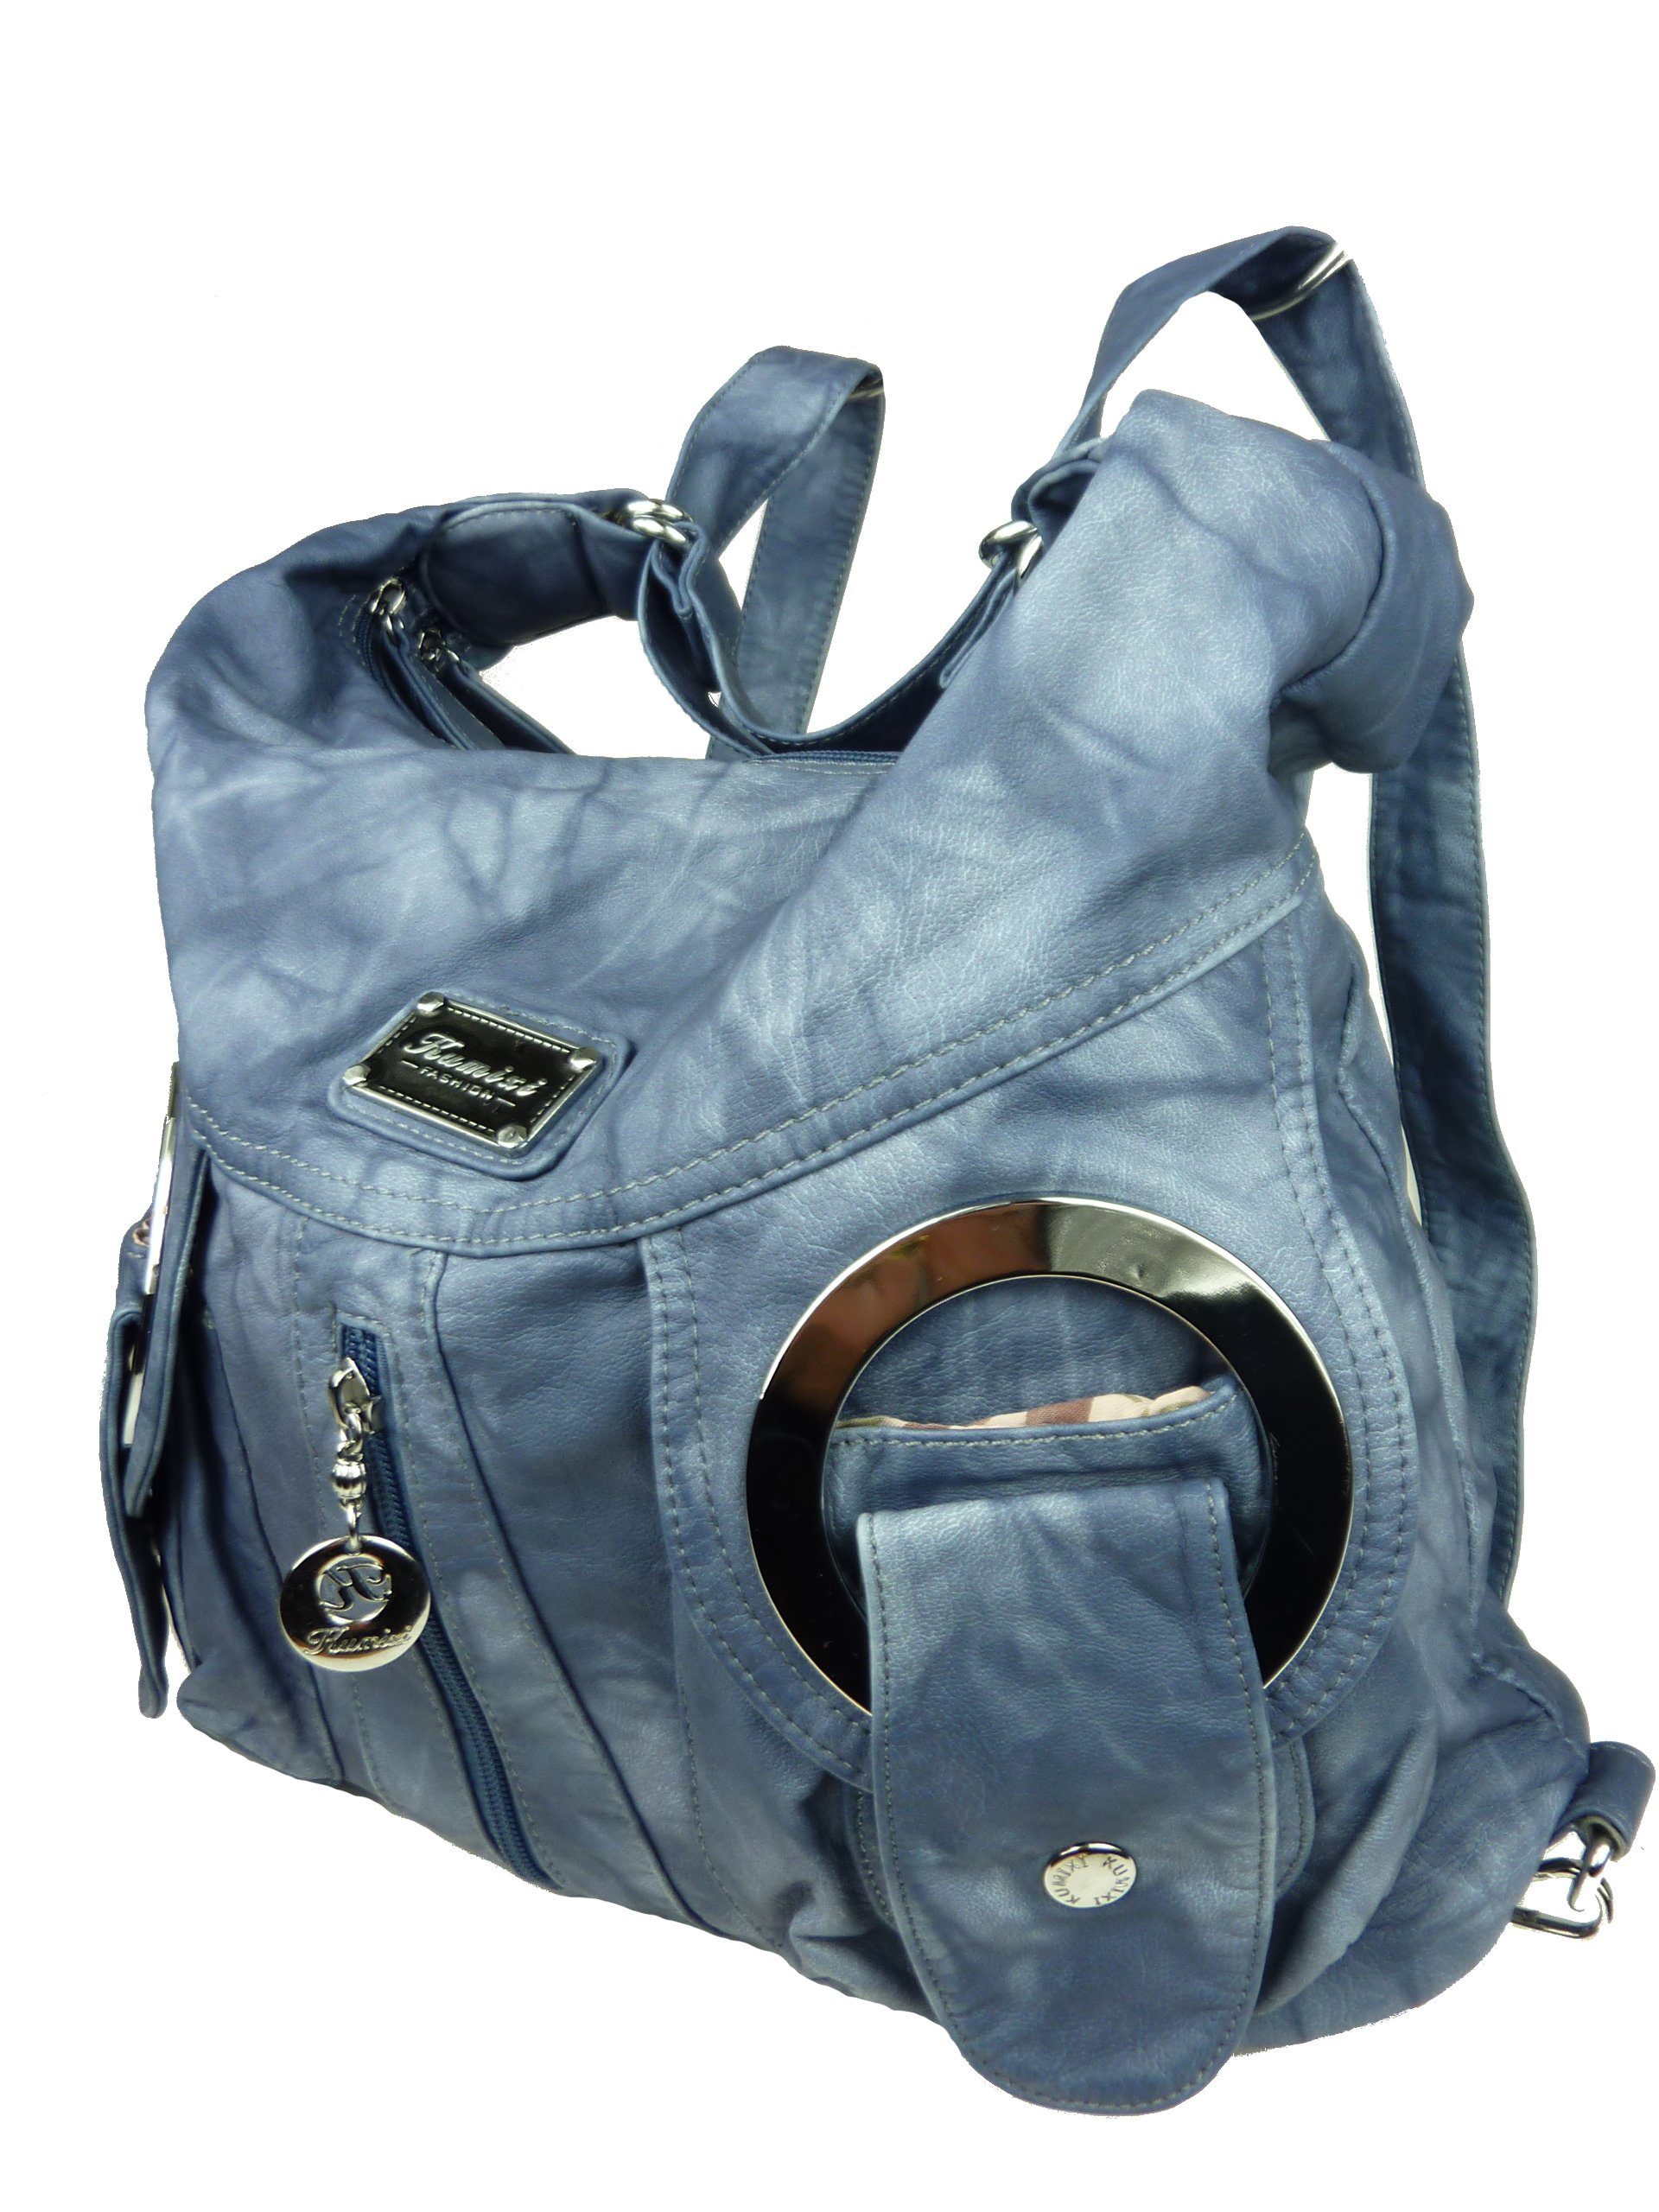 Taschen4life Schultertasche Rucksacktasche W6802 Multifunktionstasche, Tasche oder Rucksack, verstellbarer Schulterriemen, als Schultertasche oder Rucksack tragbar jeans blau